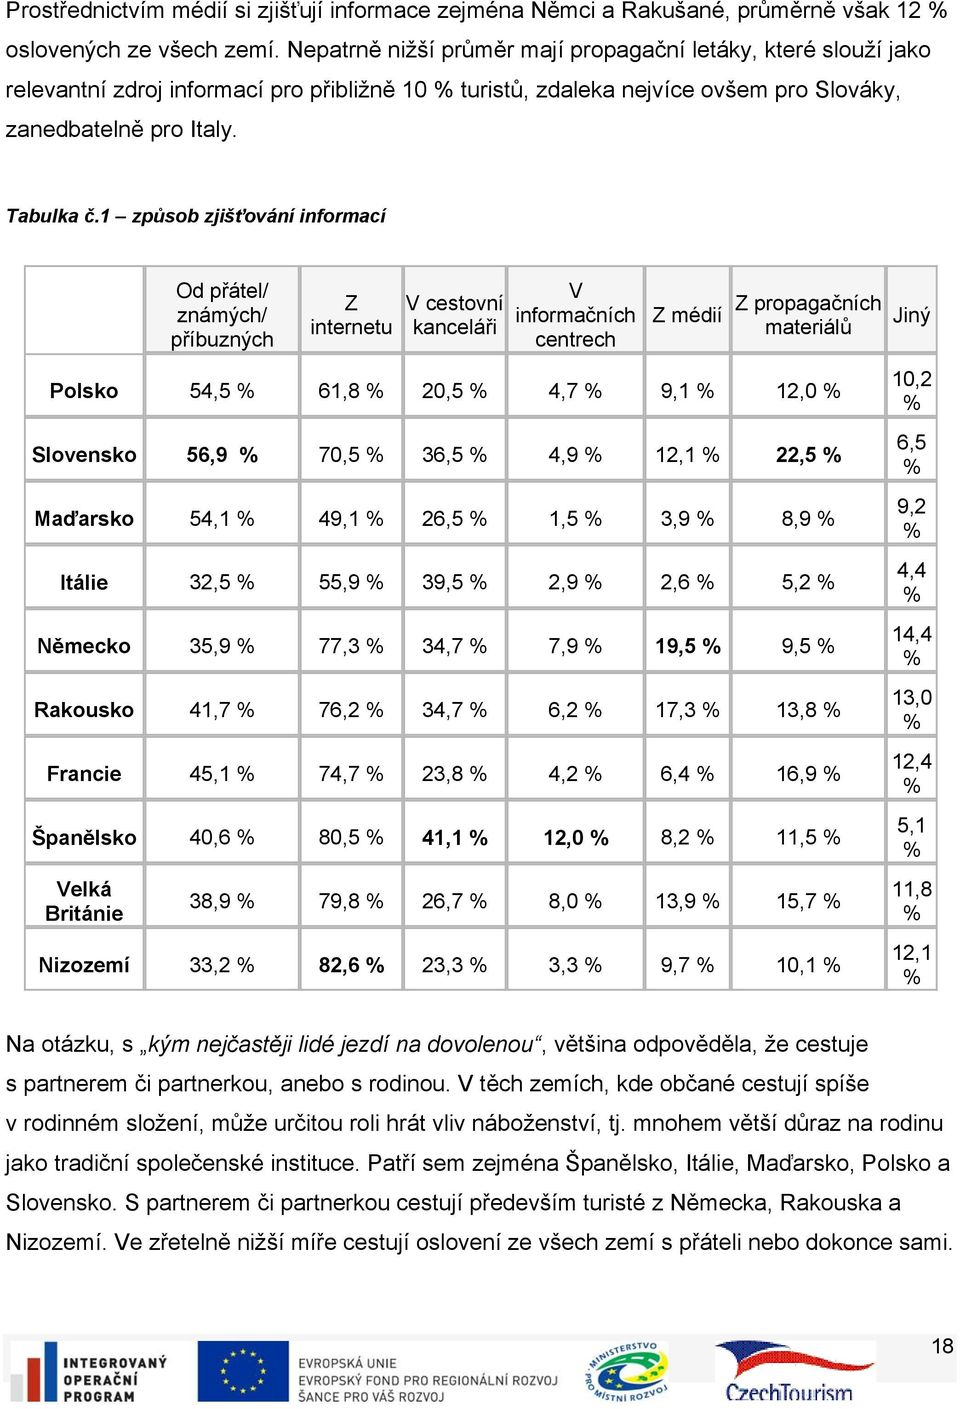 1 způsob zjišťování informací Od přátel/ známých/ příbuzných Z internetu V cestovní kanceláři V informačních centrech Z médií Z propagačních materiálů Polsko 54,5 % 61,8 % 20,5 % 4,7 % 9,1 % 12,0 %